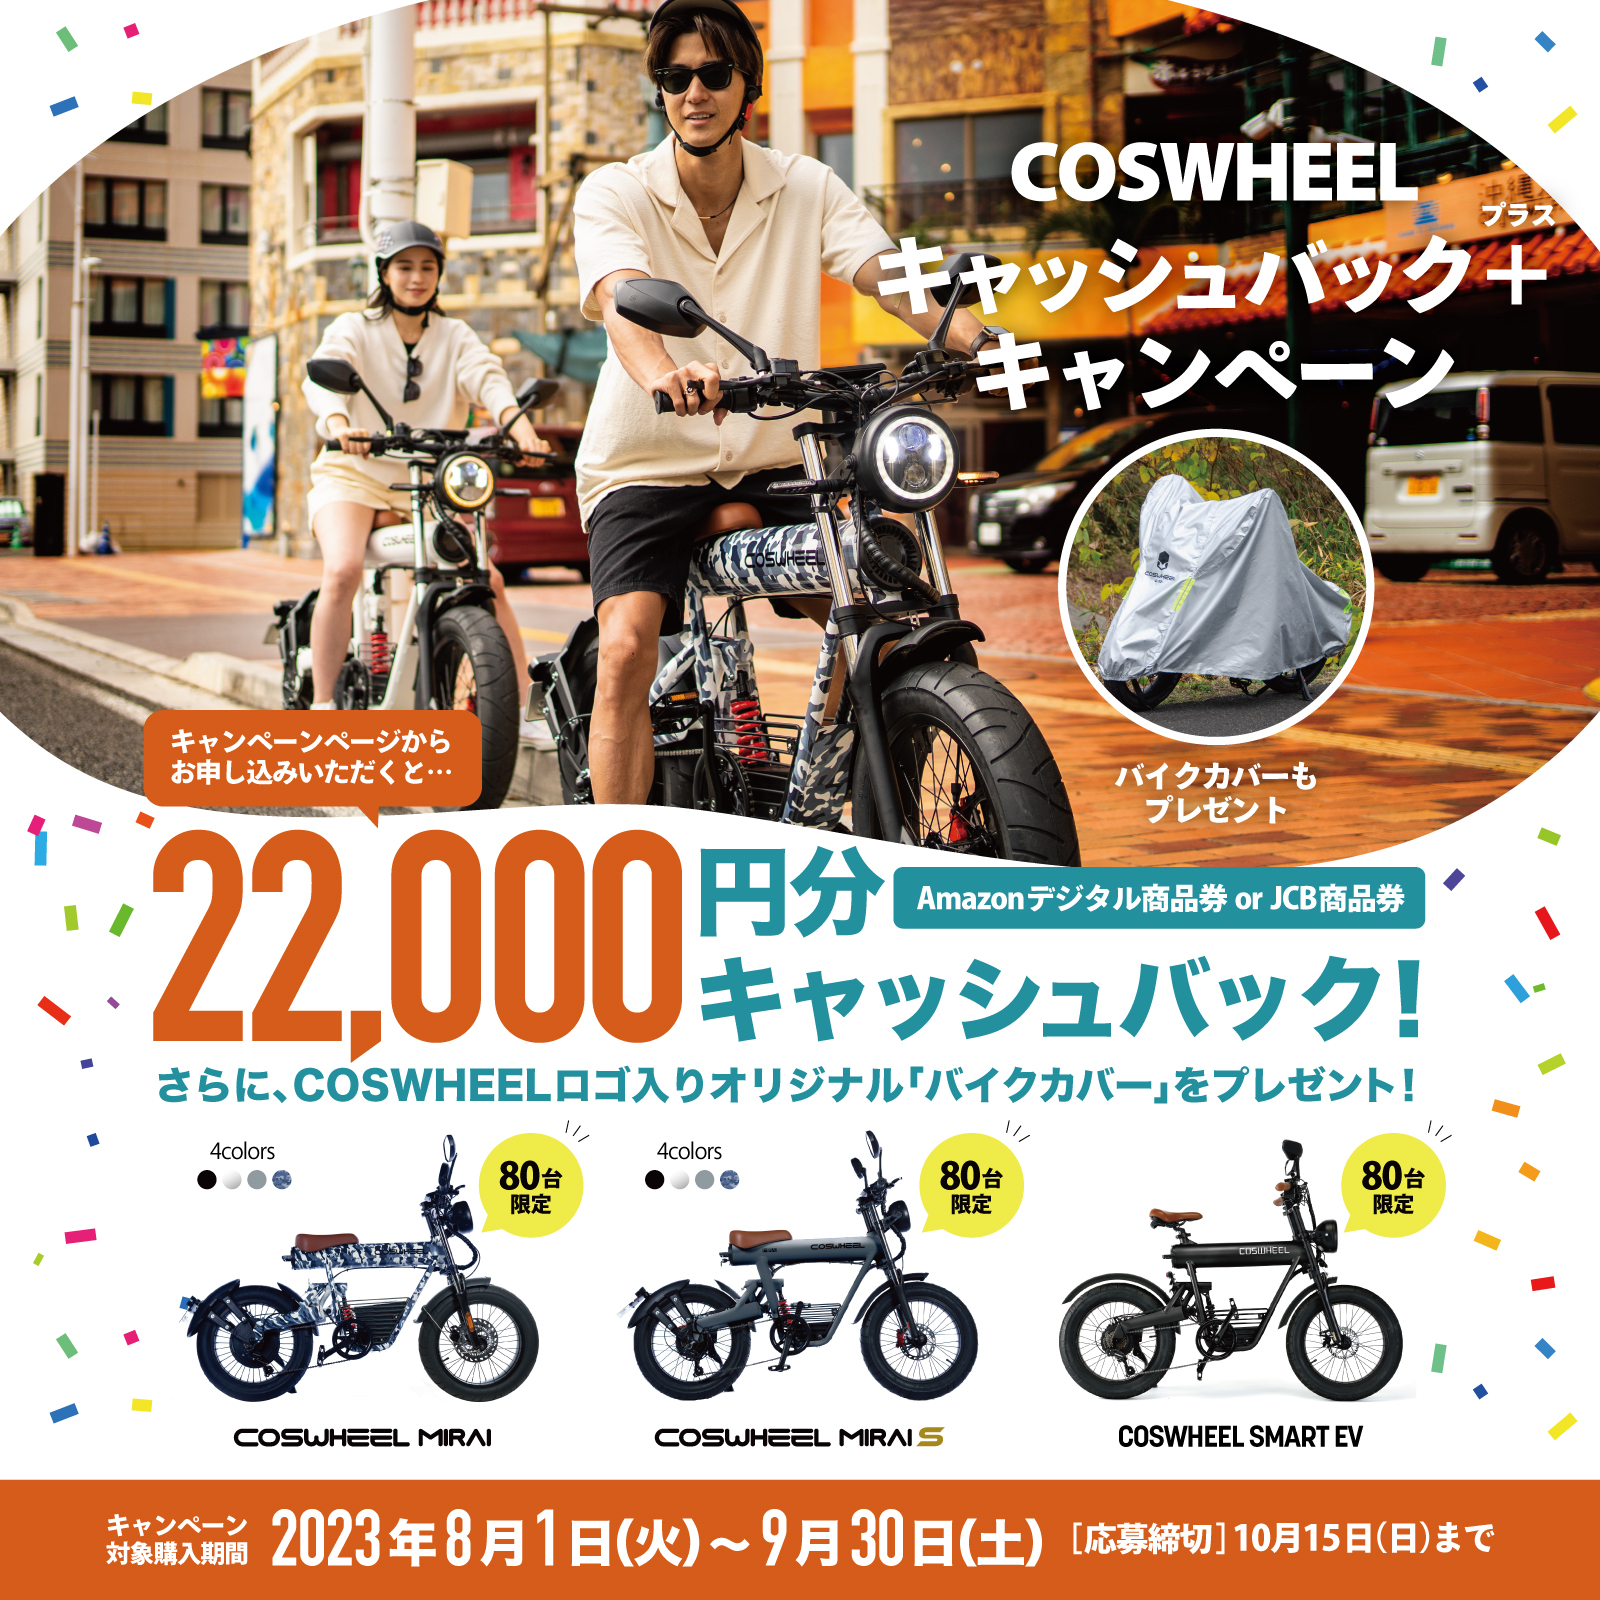 電動バイク COSWHEEL MIRAI S / 500w 原付一種モデル